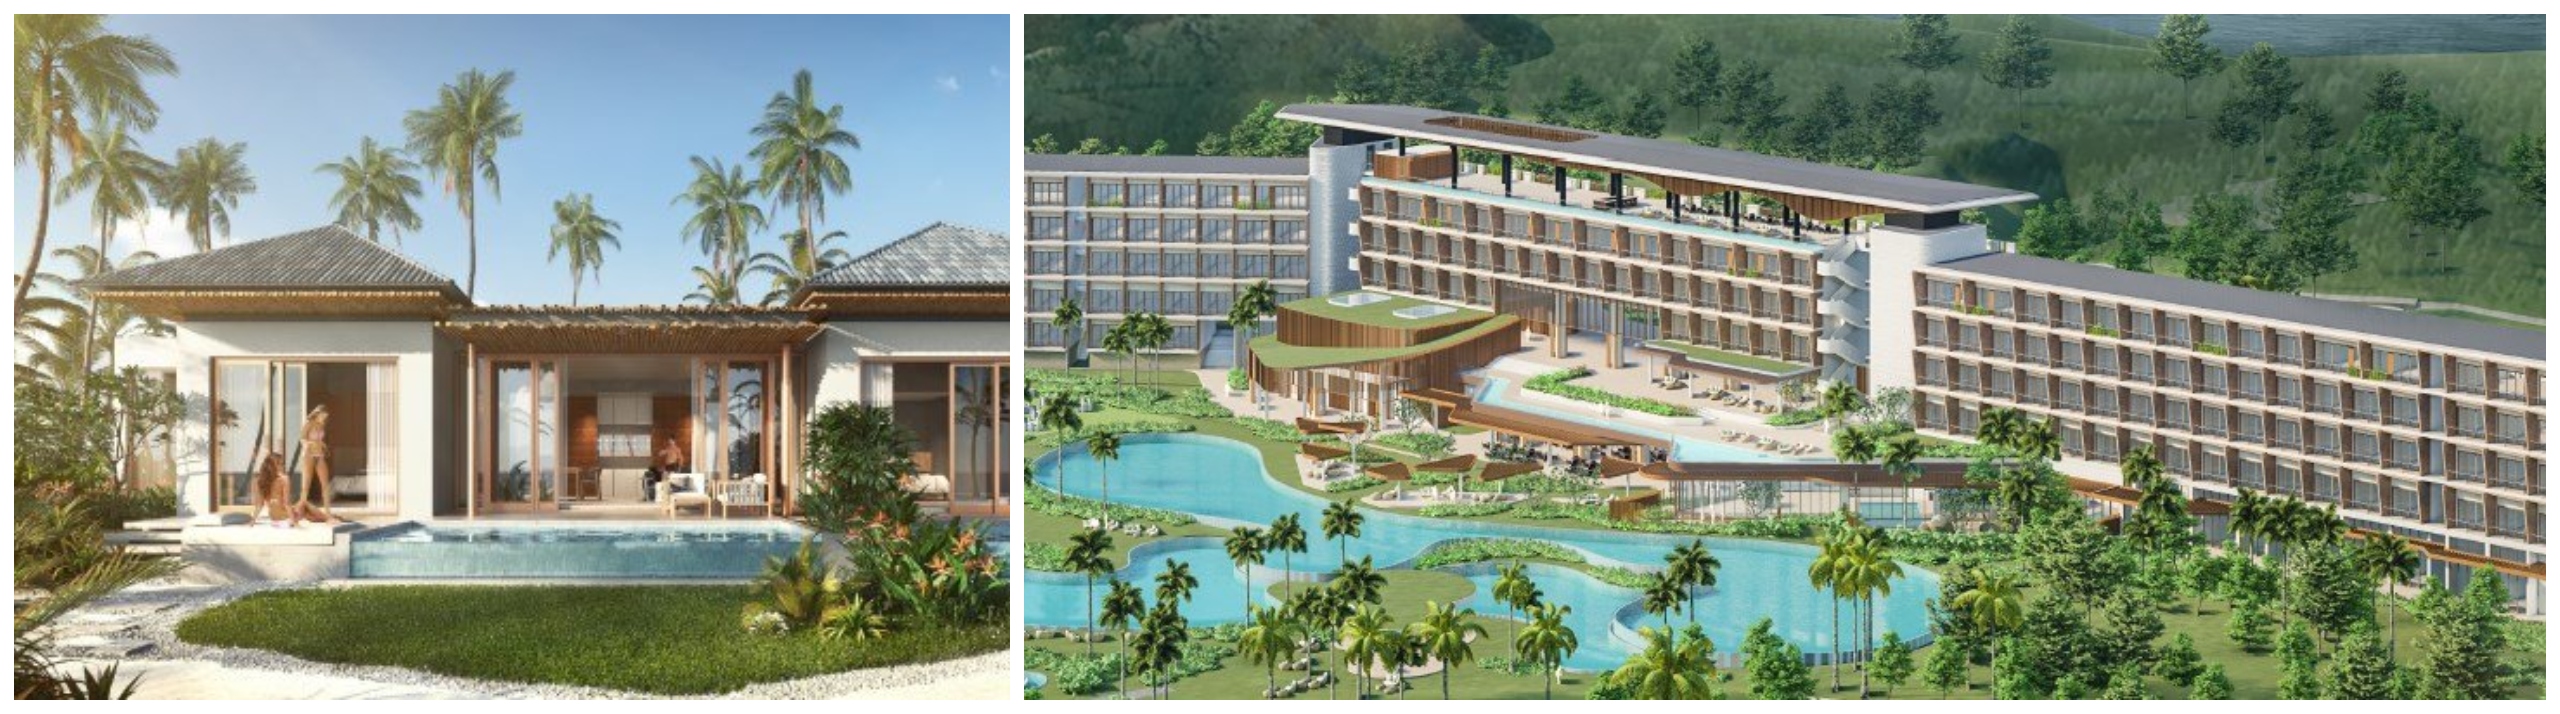 Angsana Quan Lan Ha Long Bay Hotel & Villas